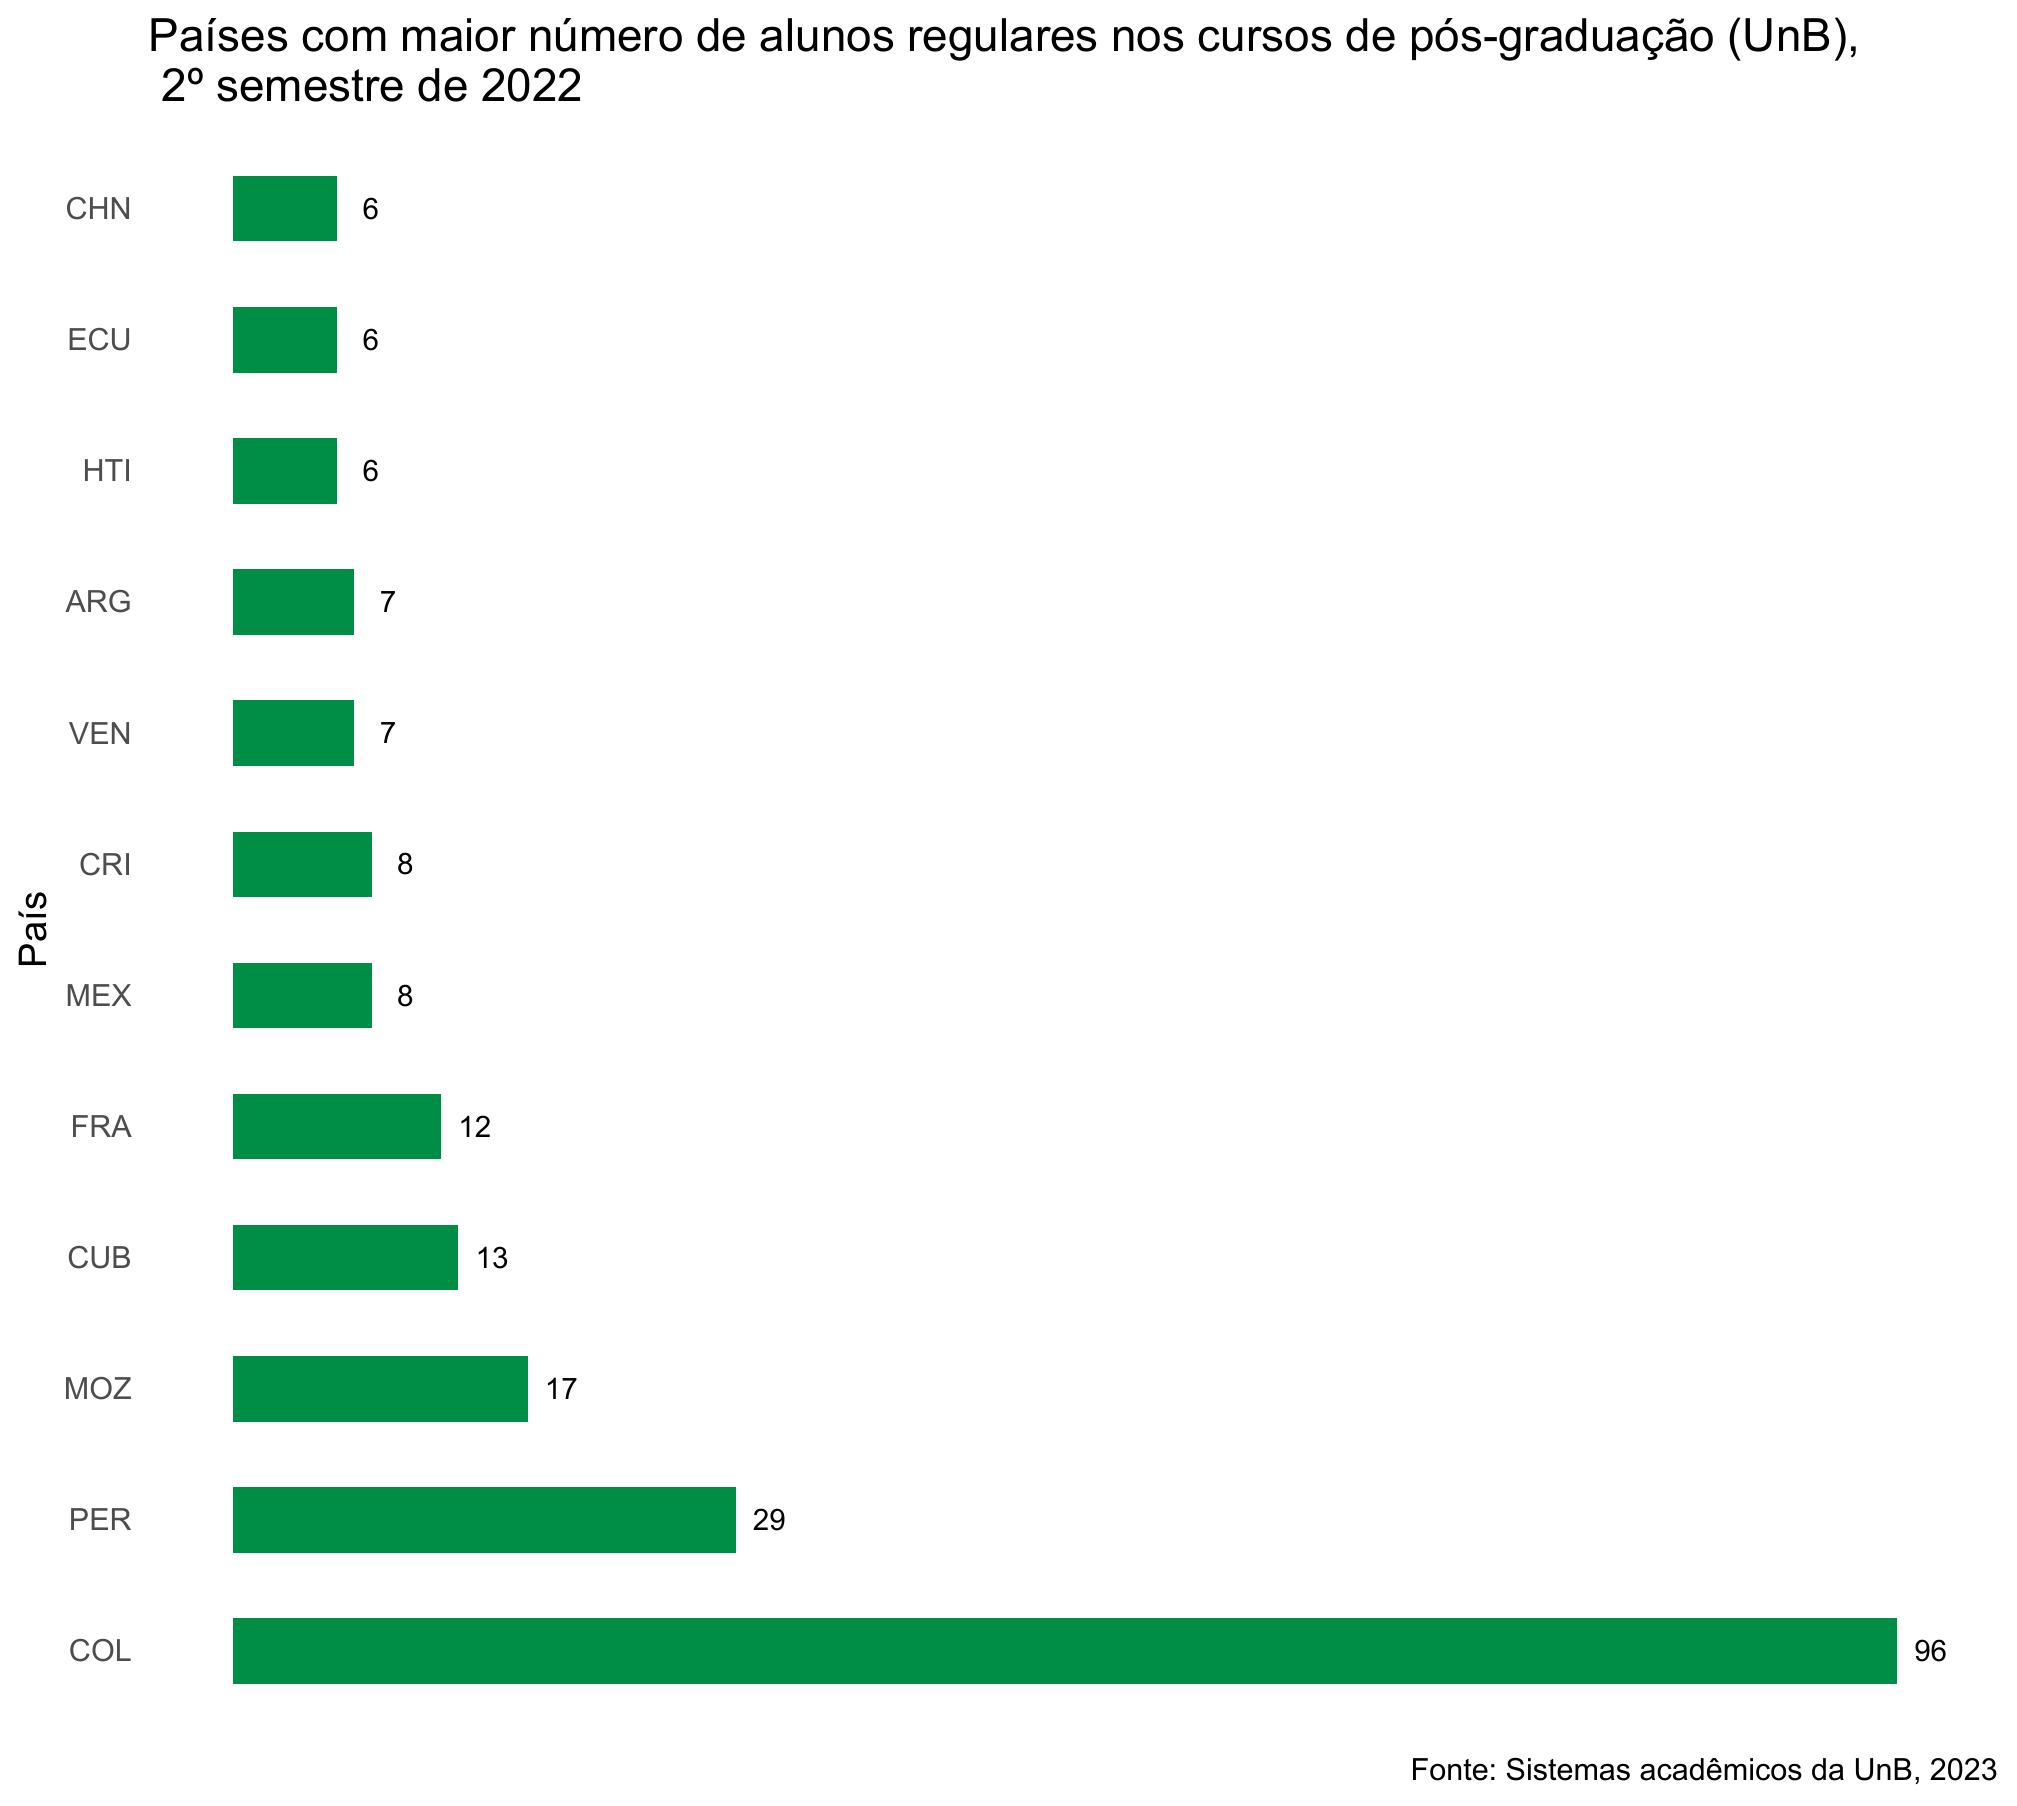 Países com maior número de alunos regulares nos cursos de pós-graduação Stricto Sensu, UnB, 2º semestre de 2022